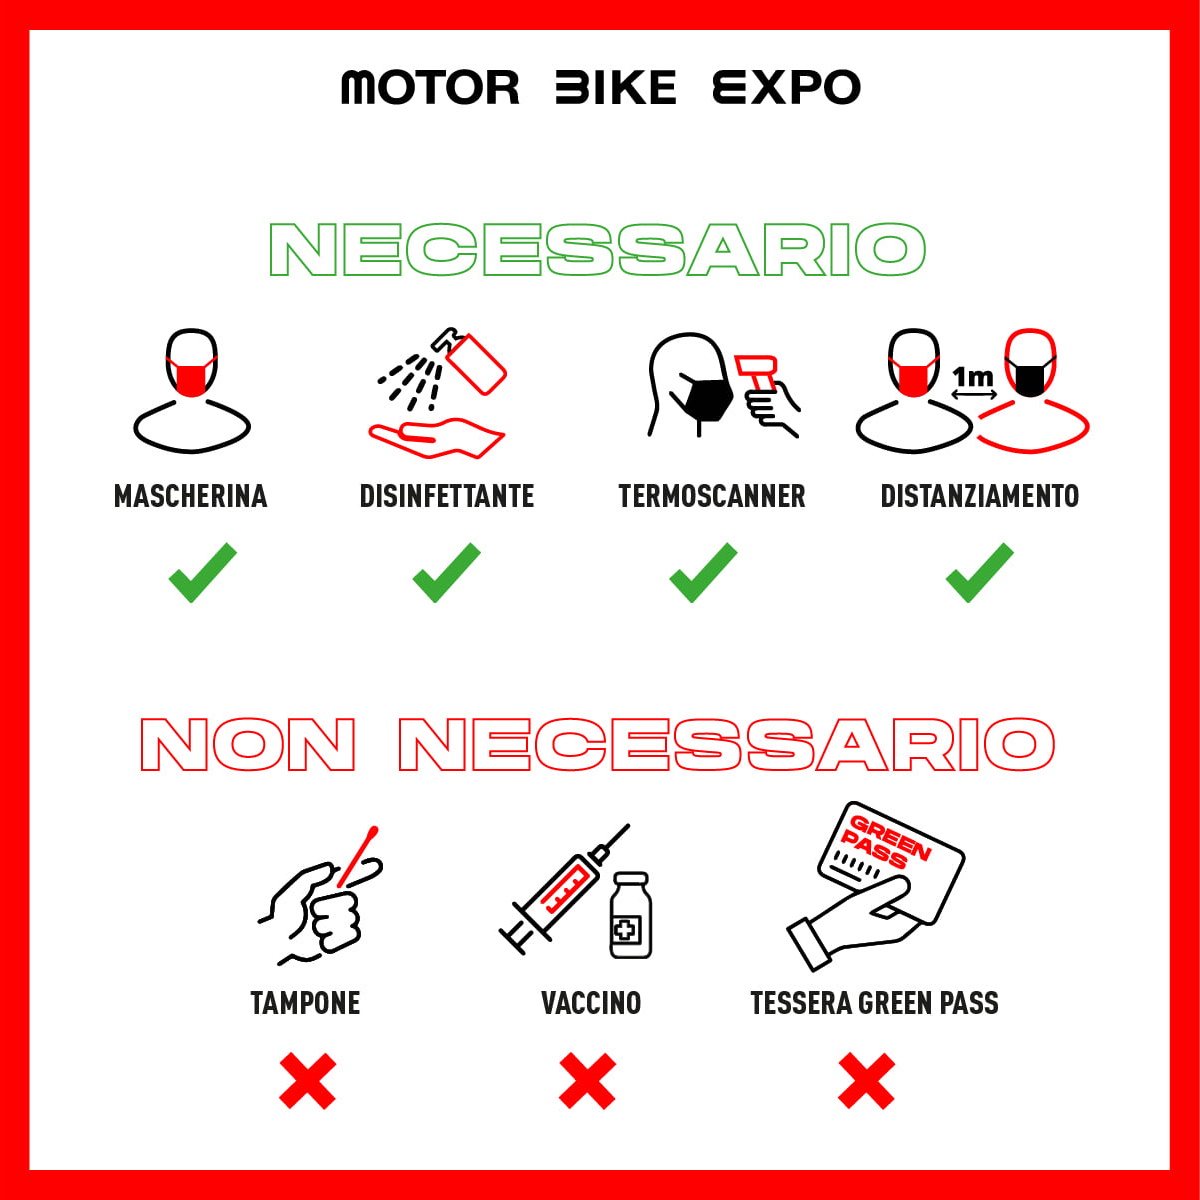 Motor_Bike_Expo_guidelines_